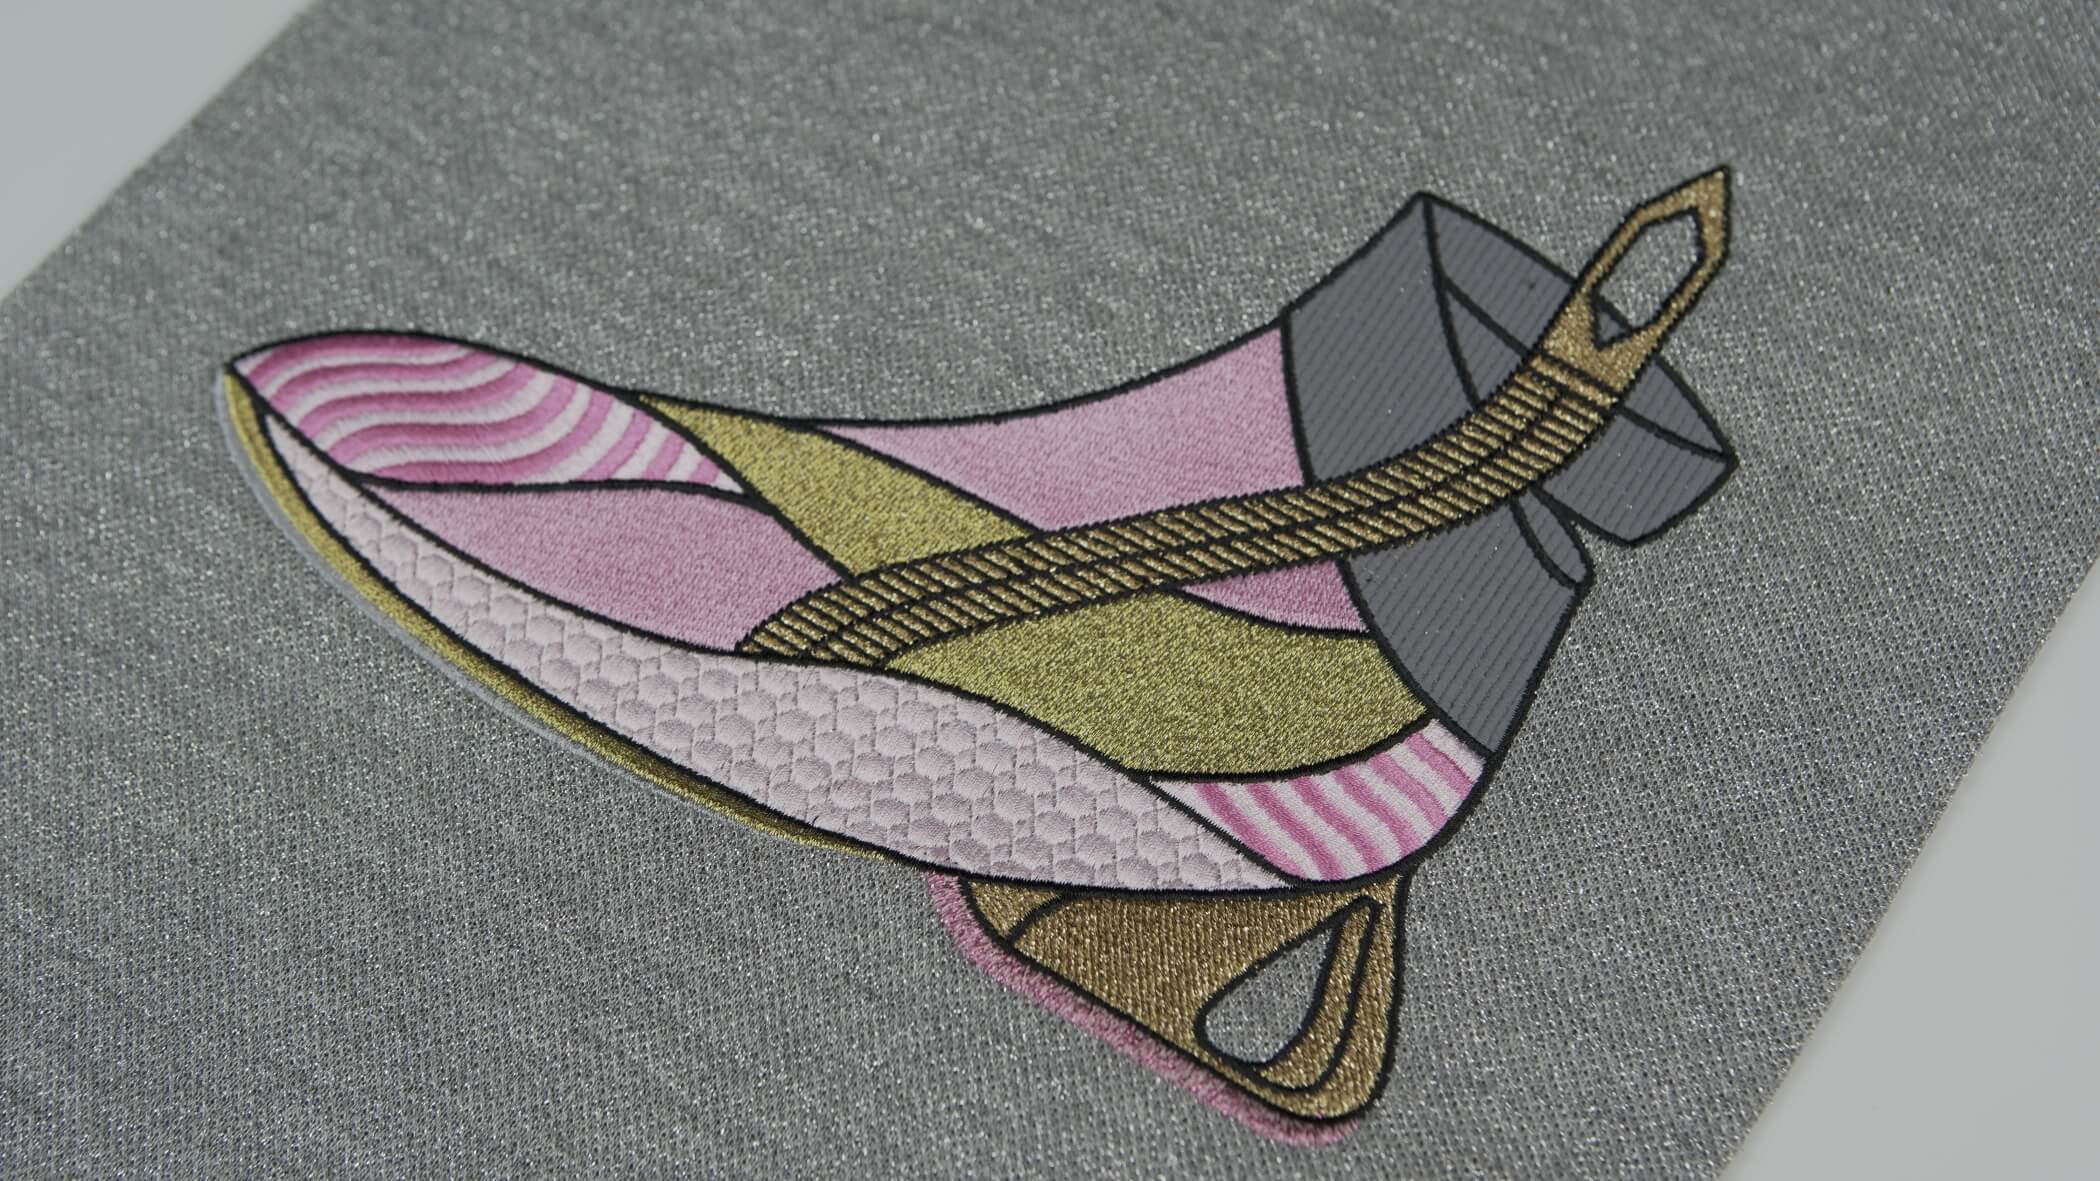 Desenho de um género de bota em tons cor de rosa, com apontamentos dourado e cinza, utilizando a técnica de bordado matizado com efeitos